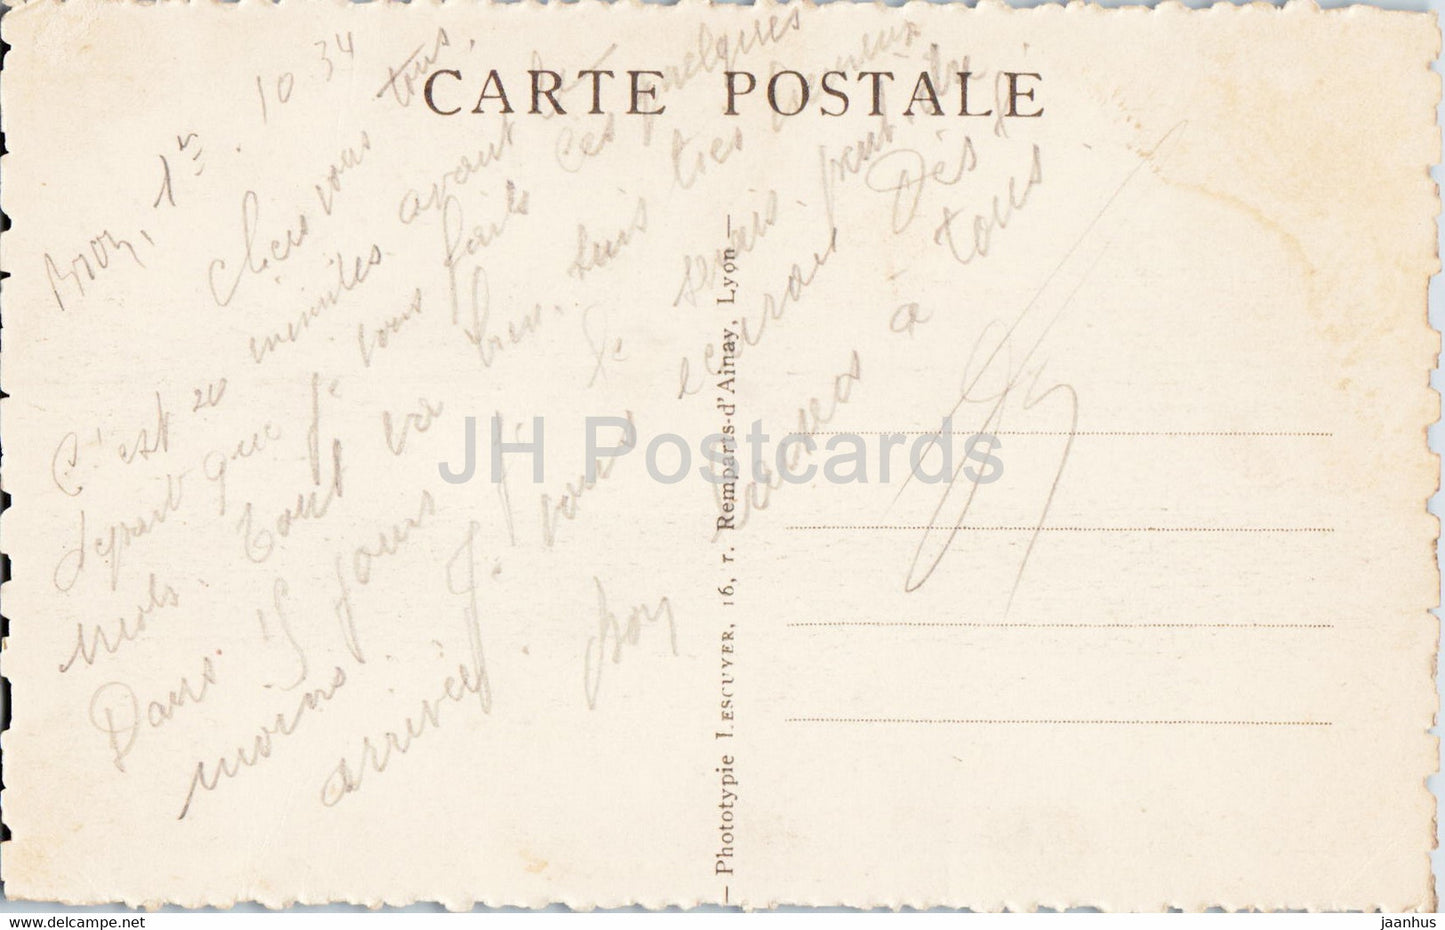 Lyon - Place Bellecour - Statue de Louis XIV - cheval - carte postale ancienne - 1934 - France - occasion